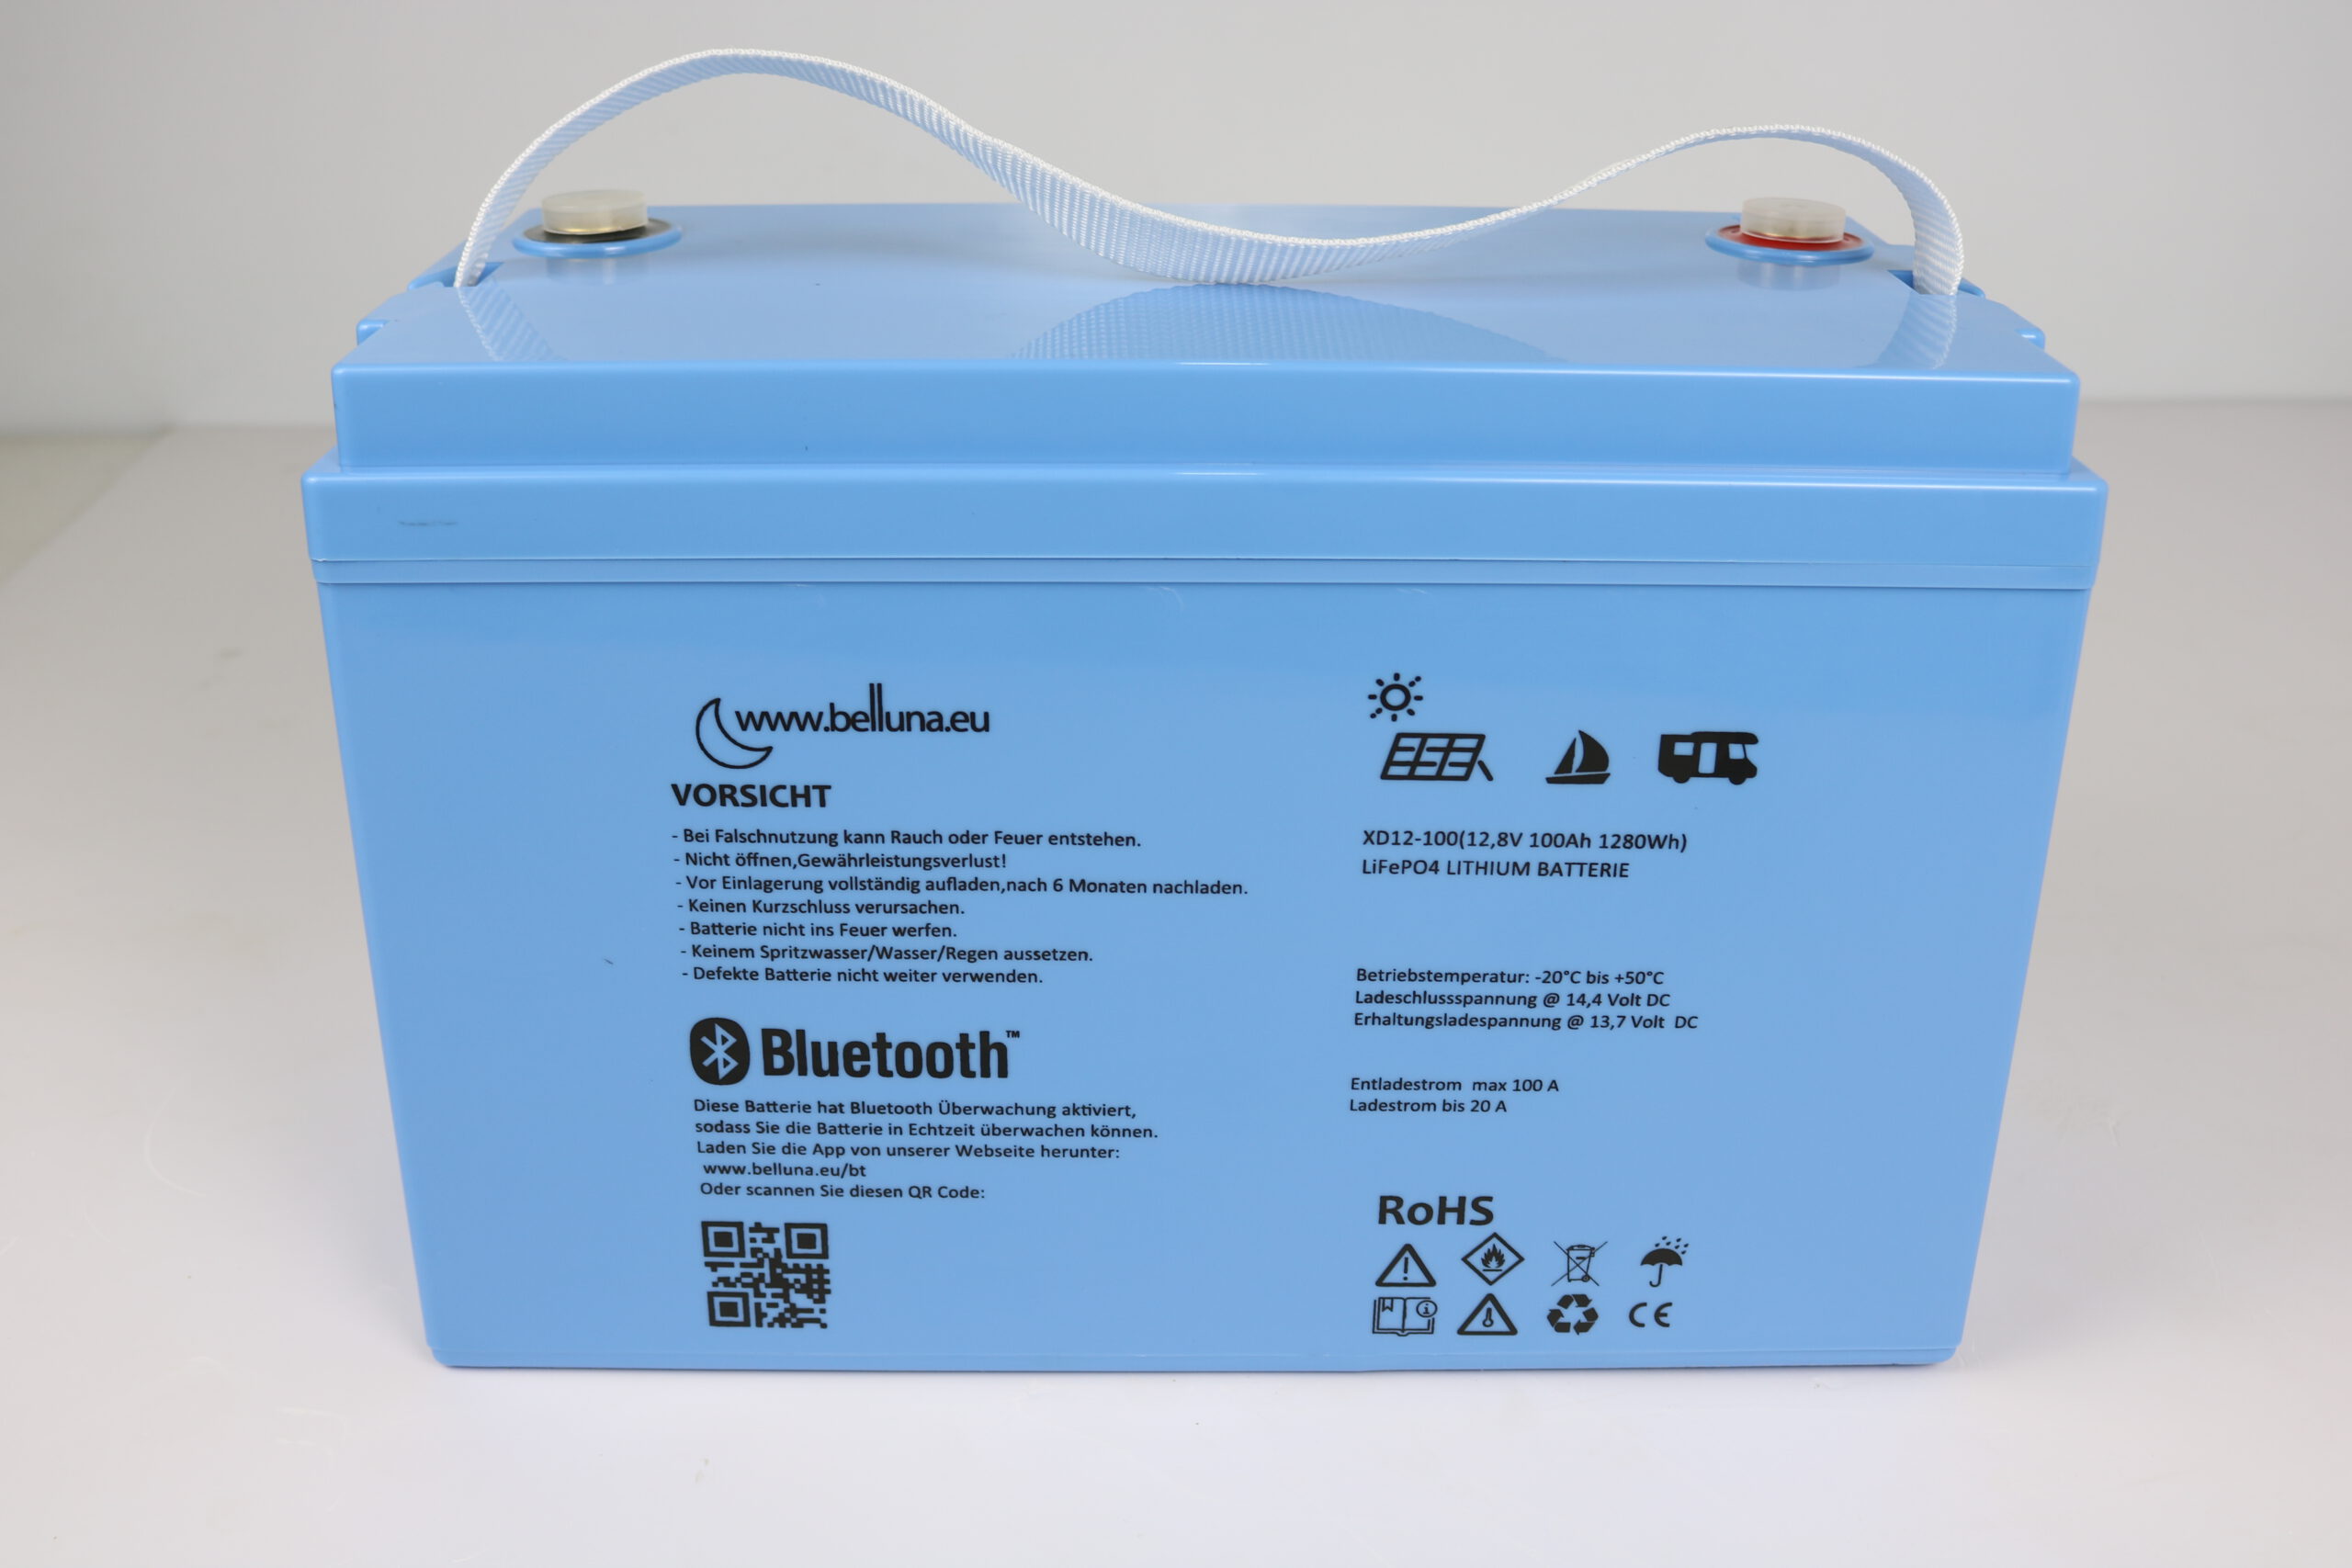 Lithium Batterien für Ihr Wohnmobil: LiFePO4 Akkus